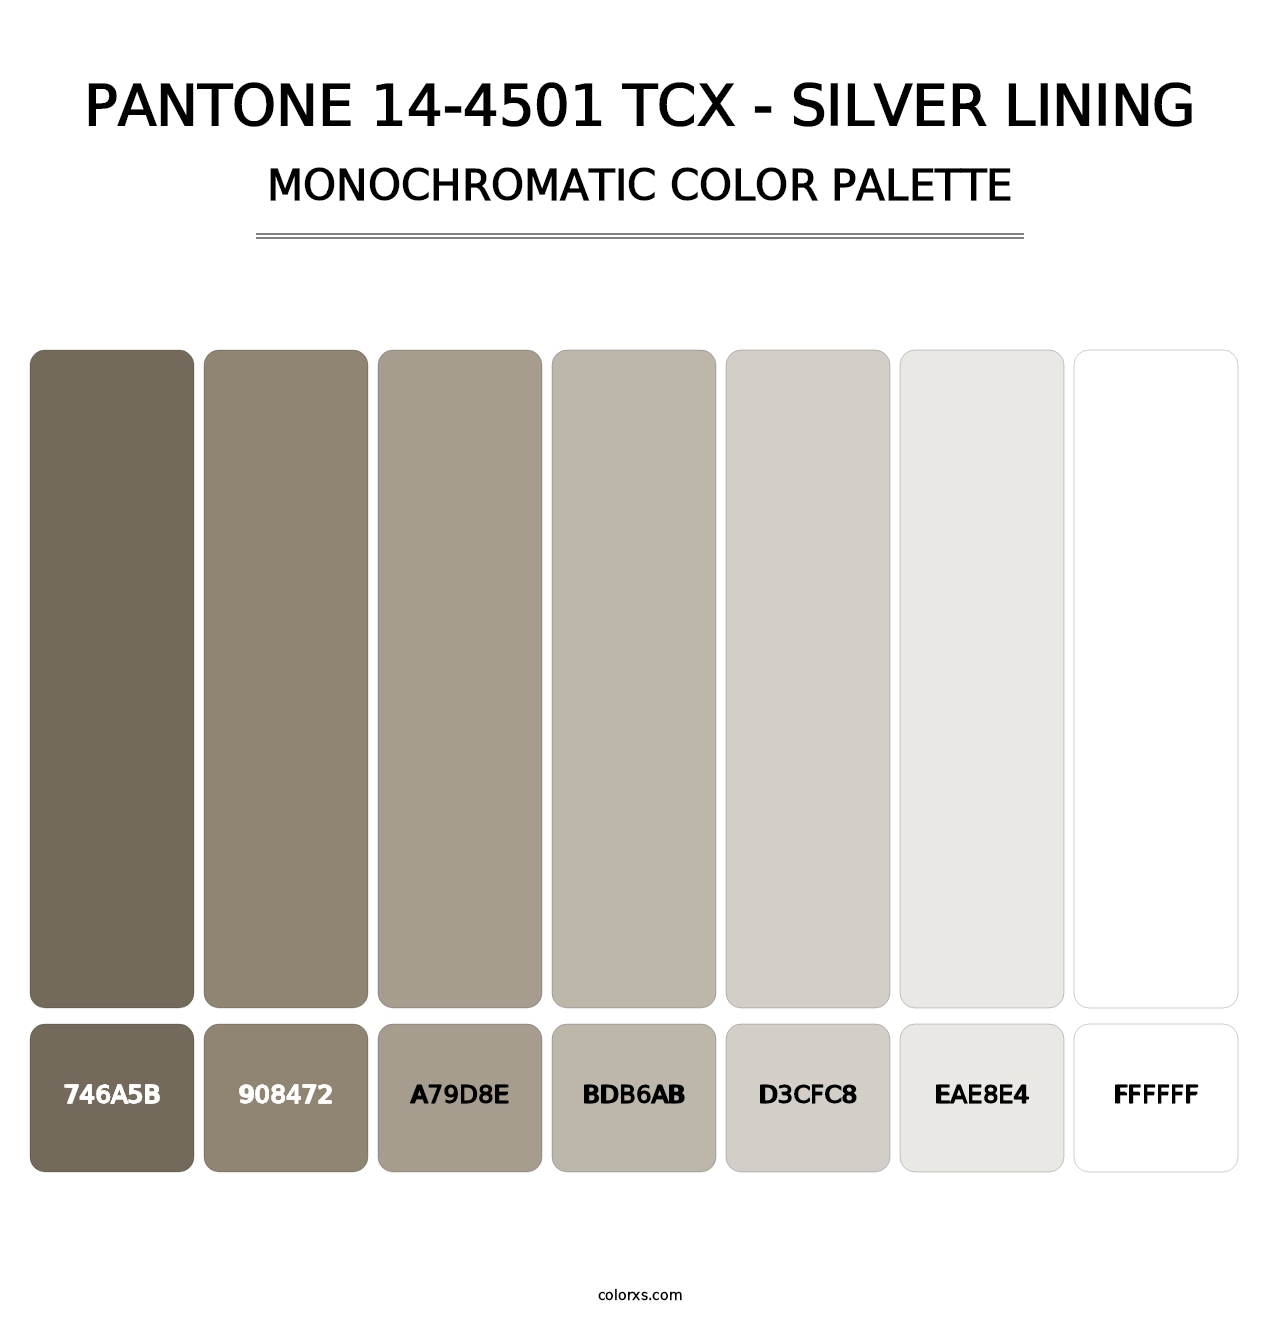 PANTONE 14-4501 TCX - Silver Lining - Monochromatic Color Palette